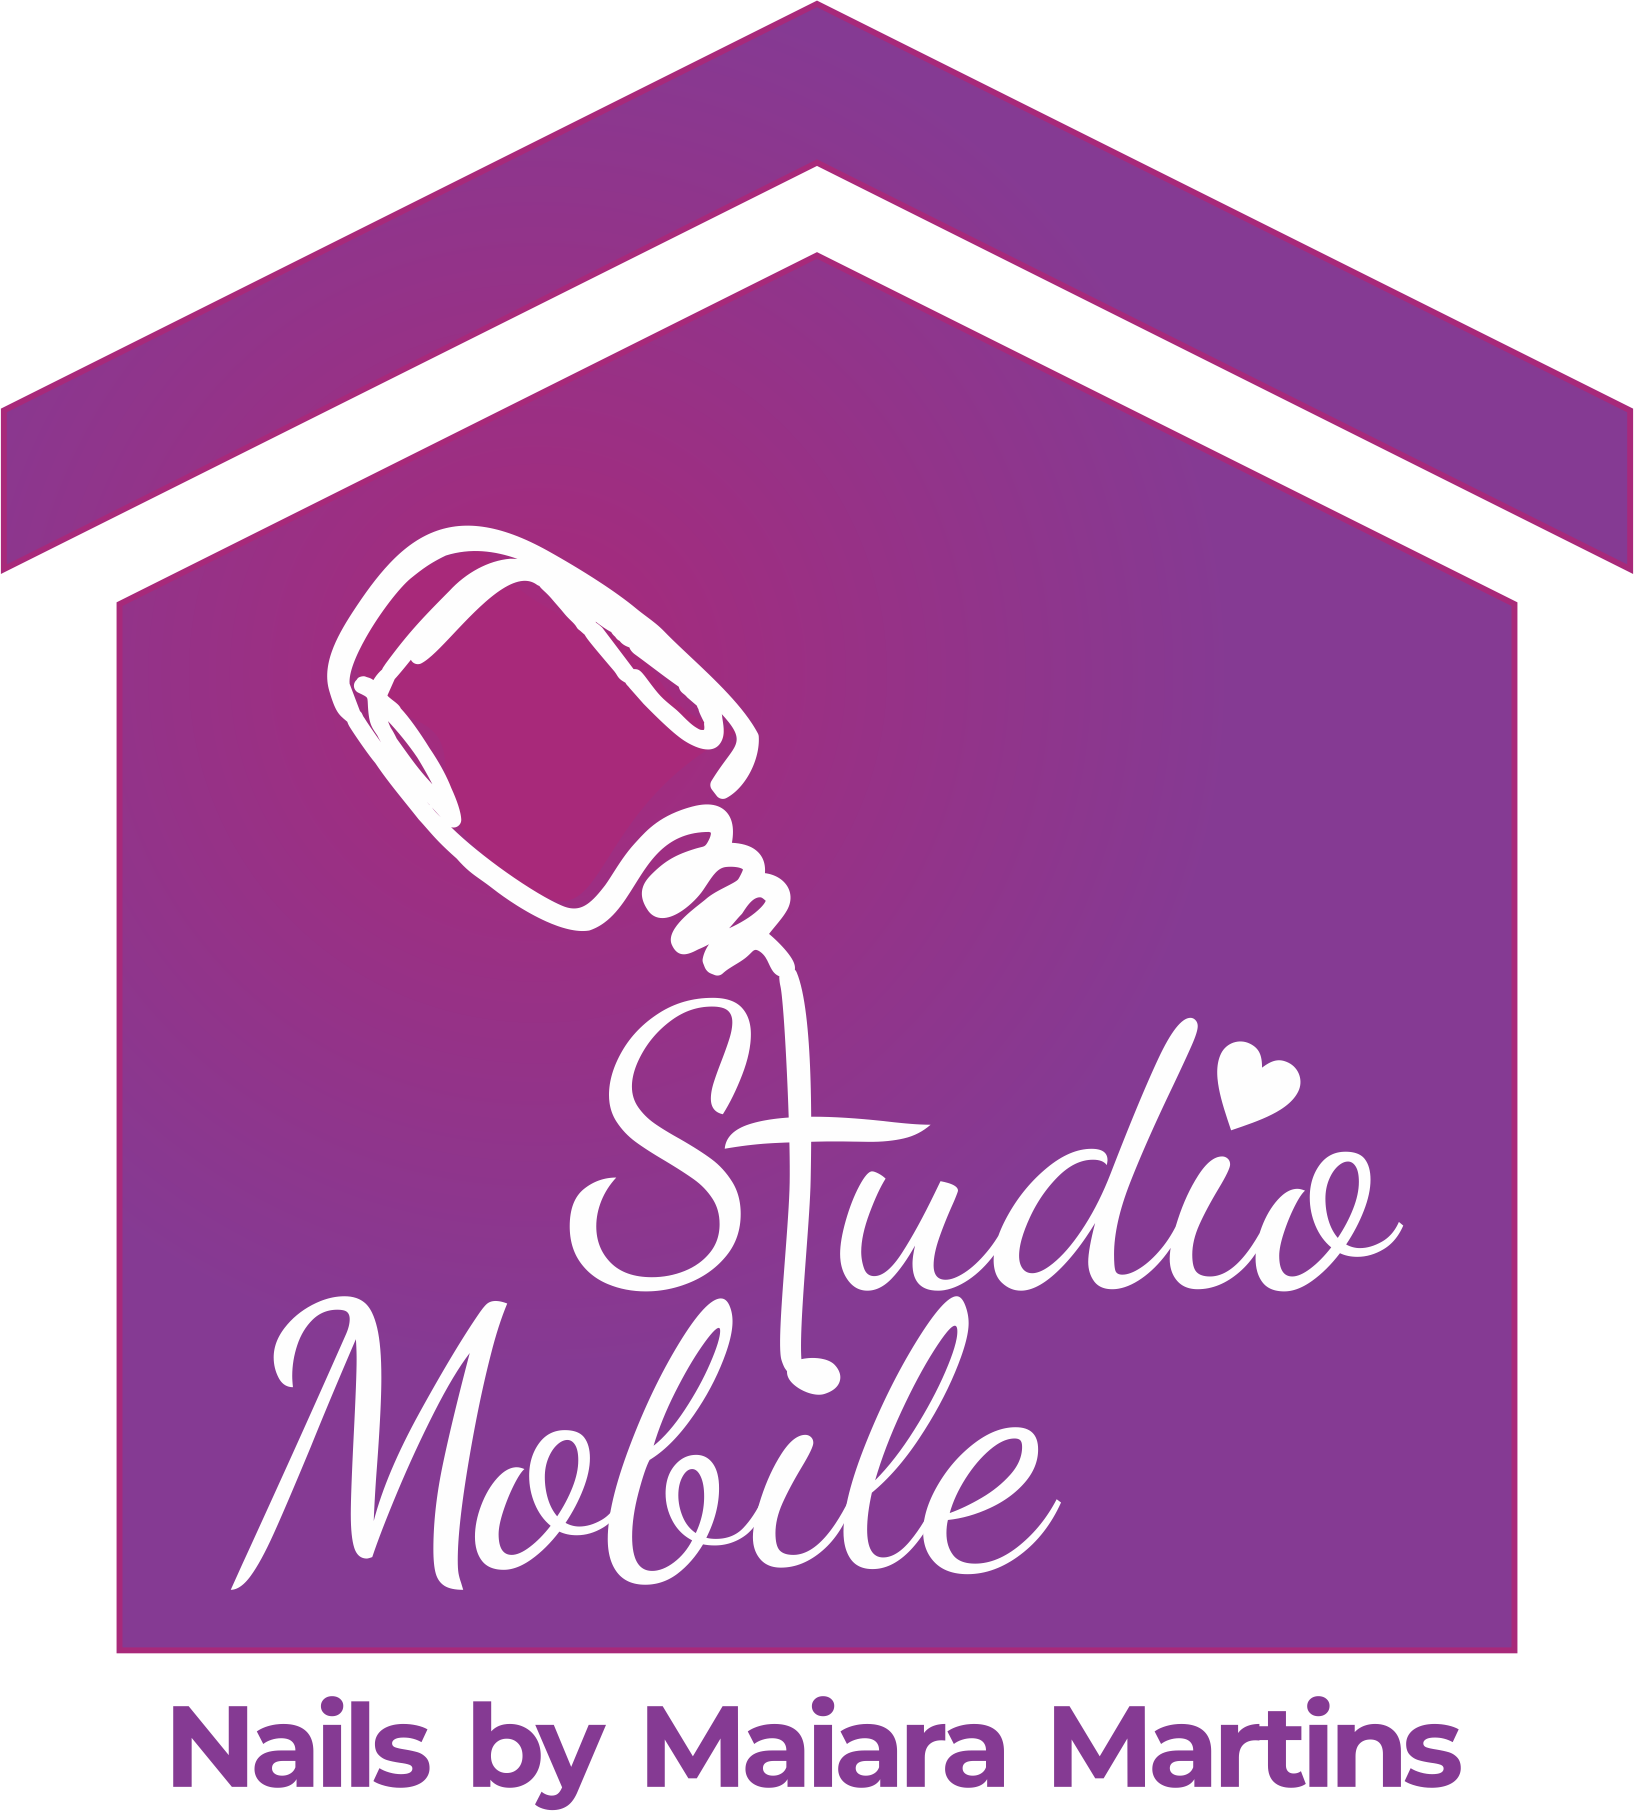 Studio Mobile